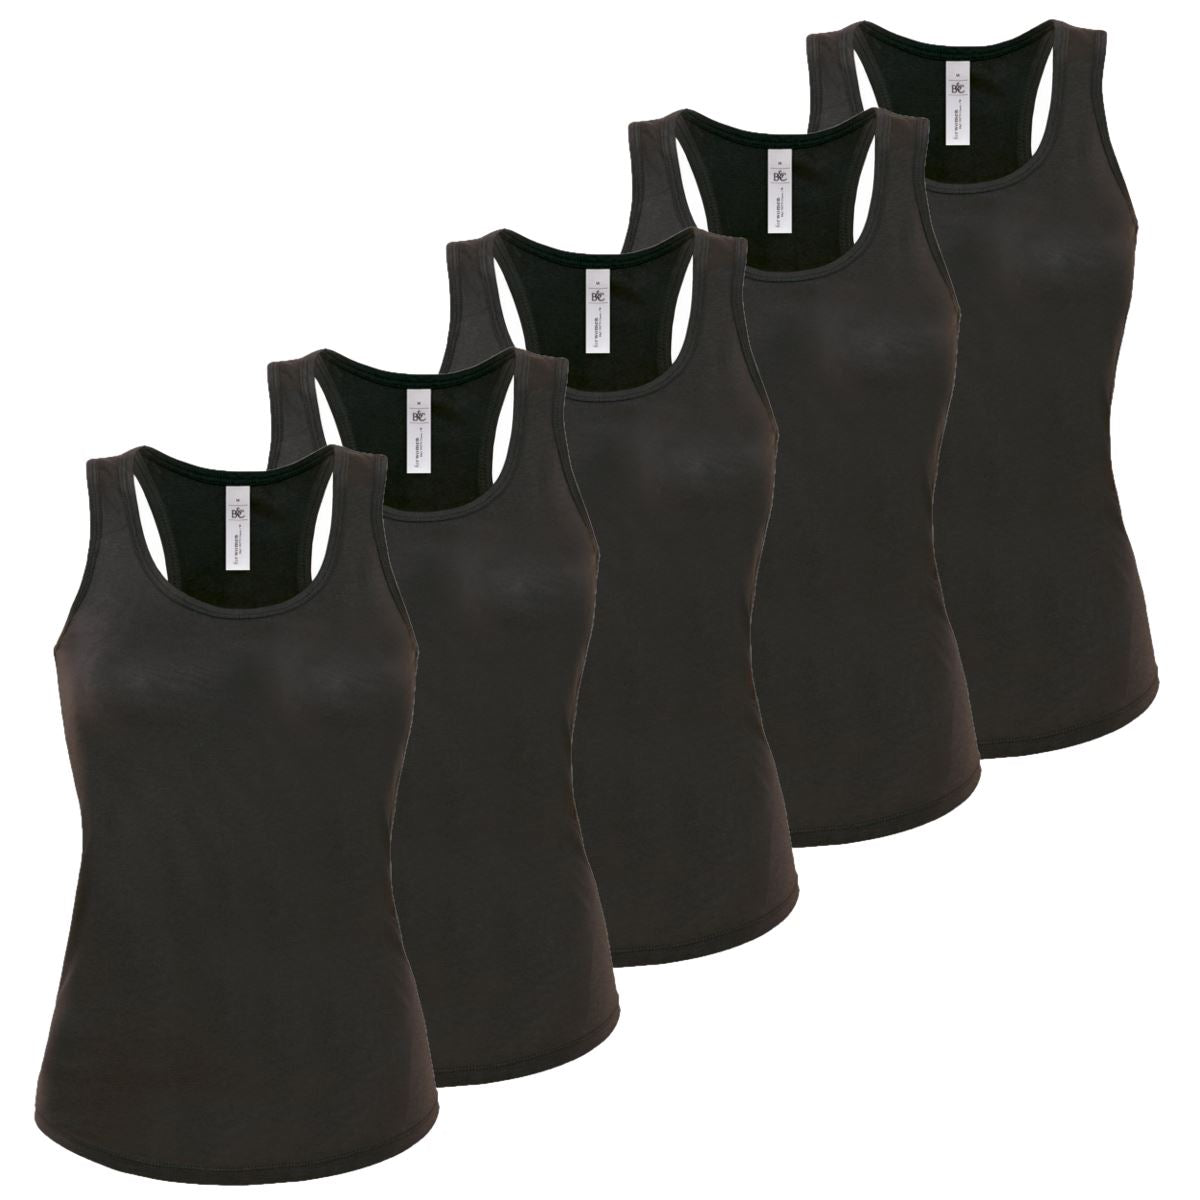 Pack of 5 Black Vest Tops